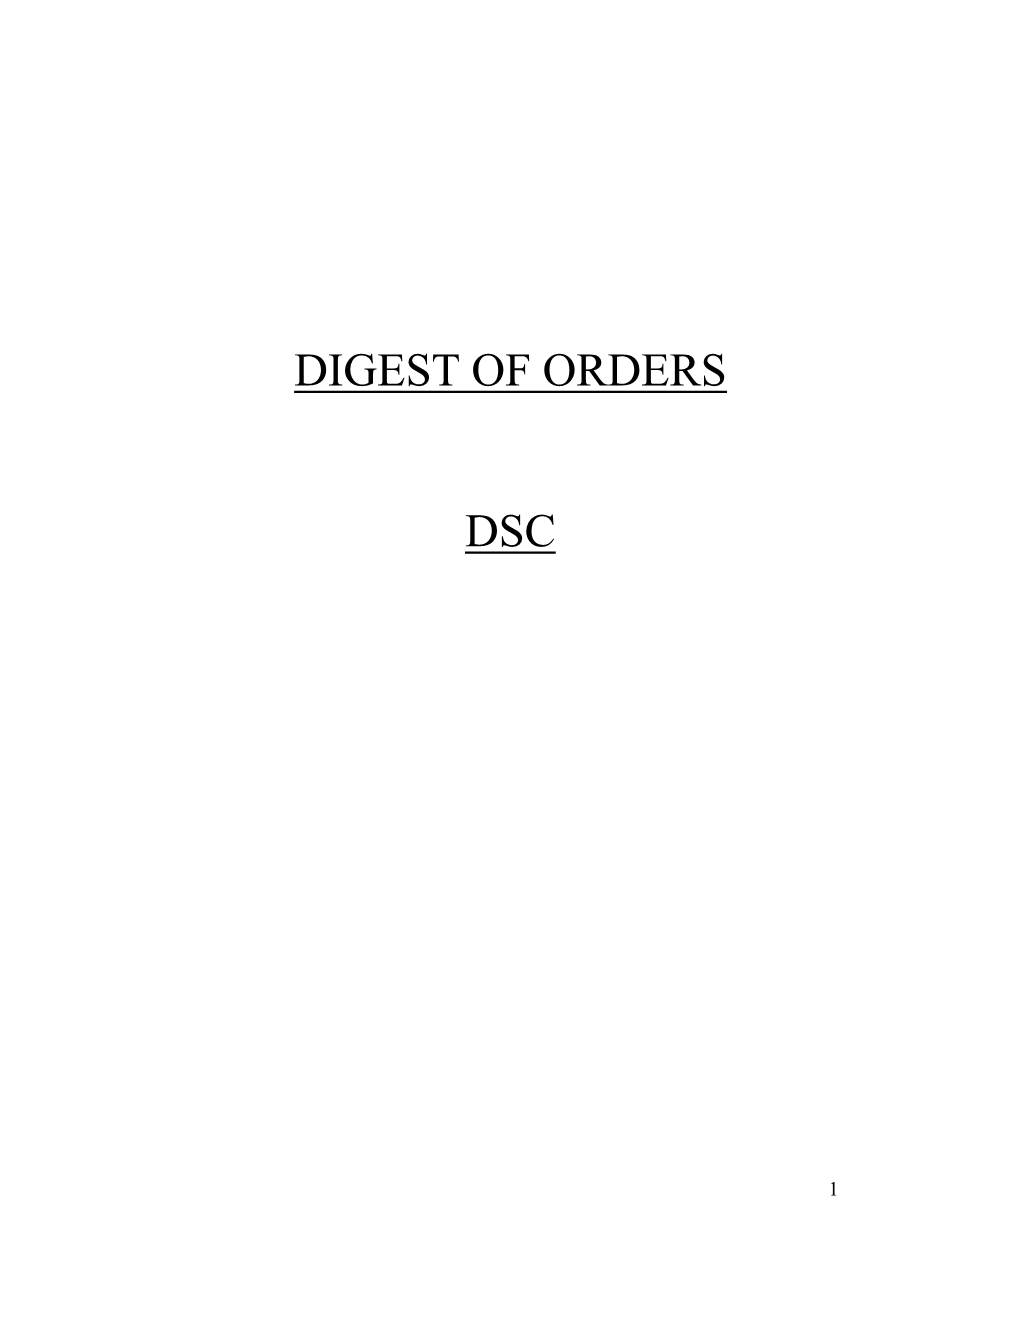 Digest of Orders